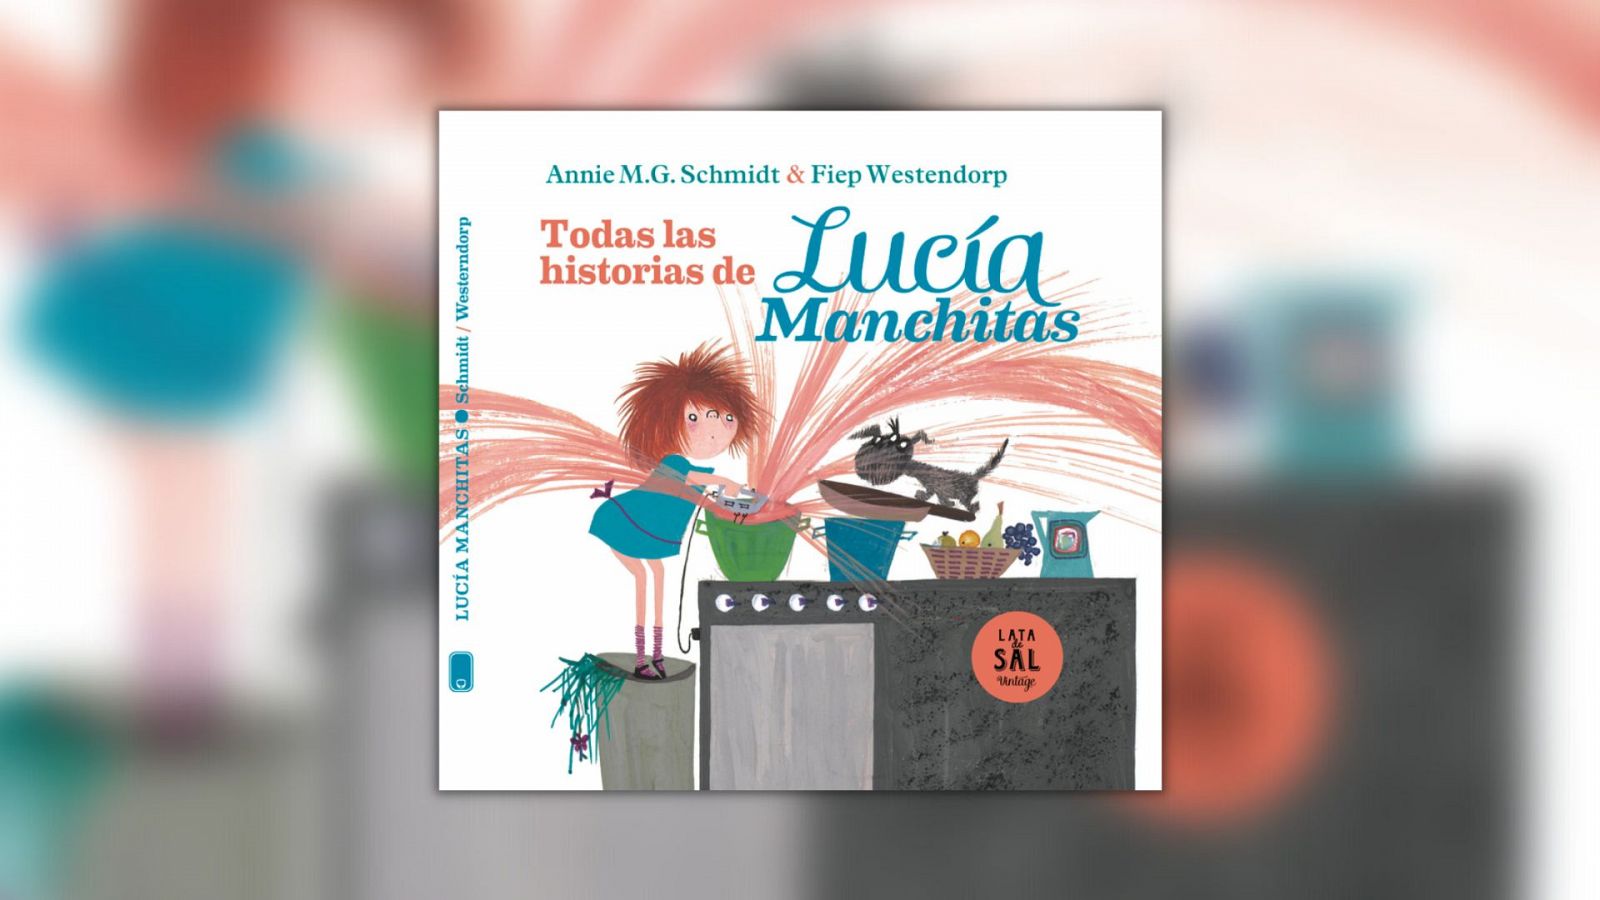 La estación azul de los niños - 'Lucía Manchitas', de Annie M.G. Schmidt - Escuchar ahora